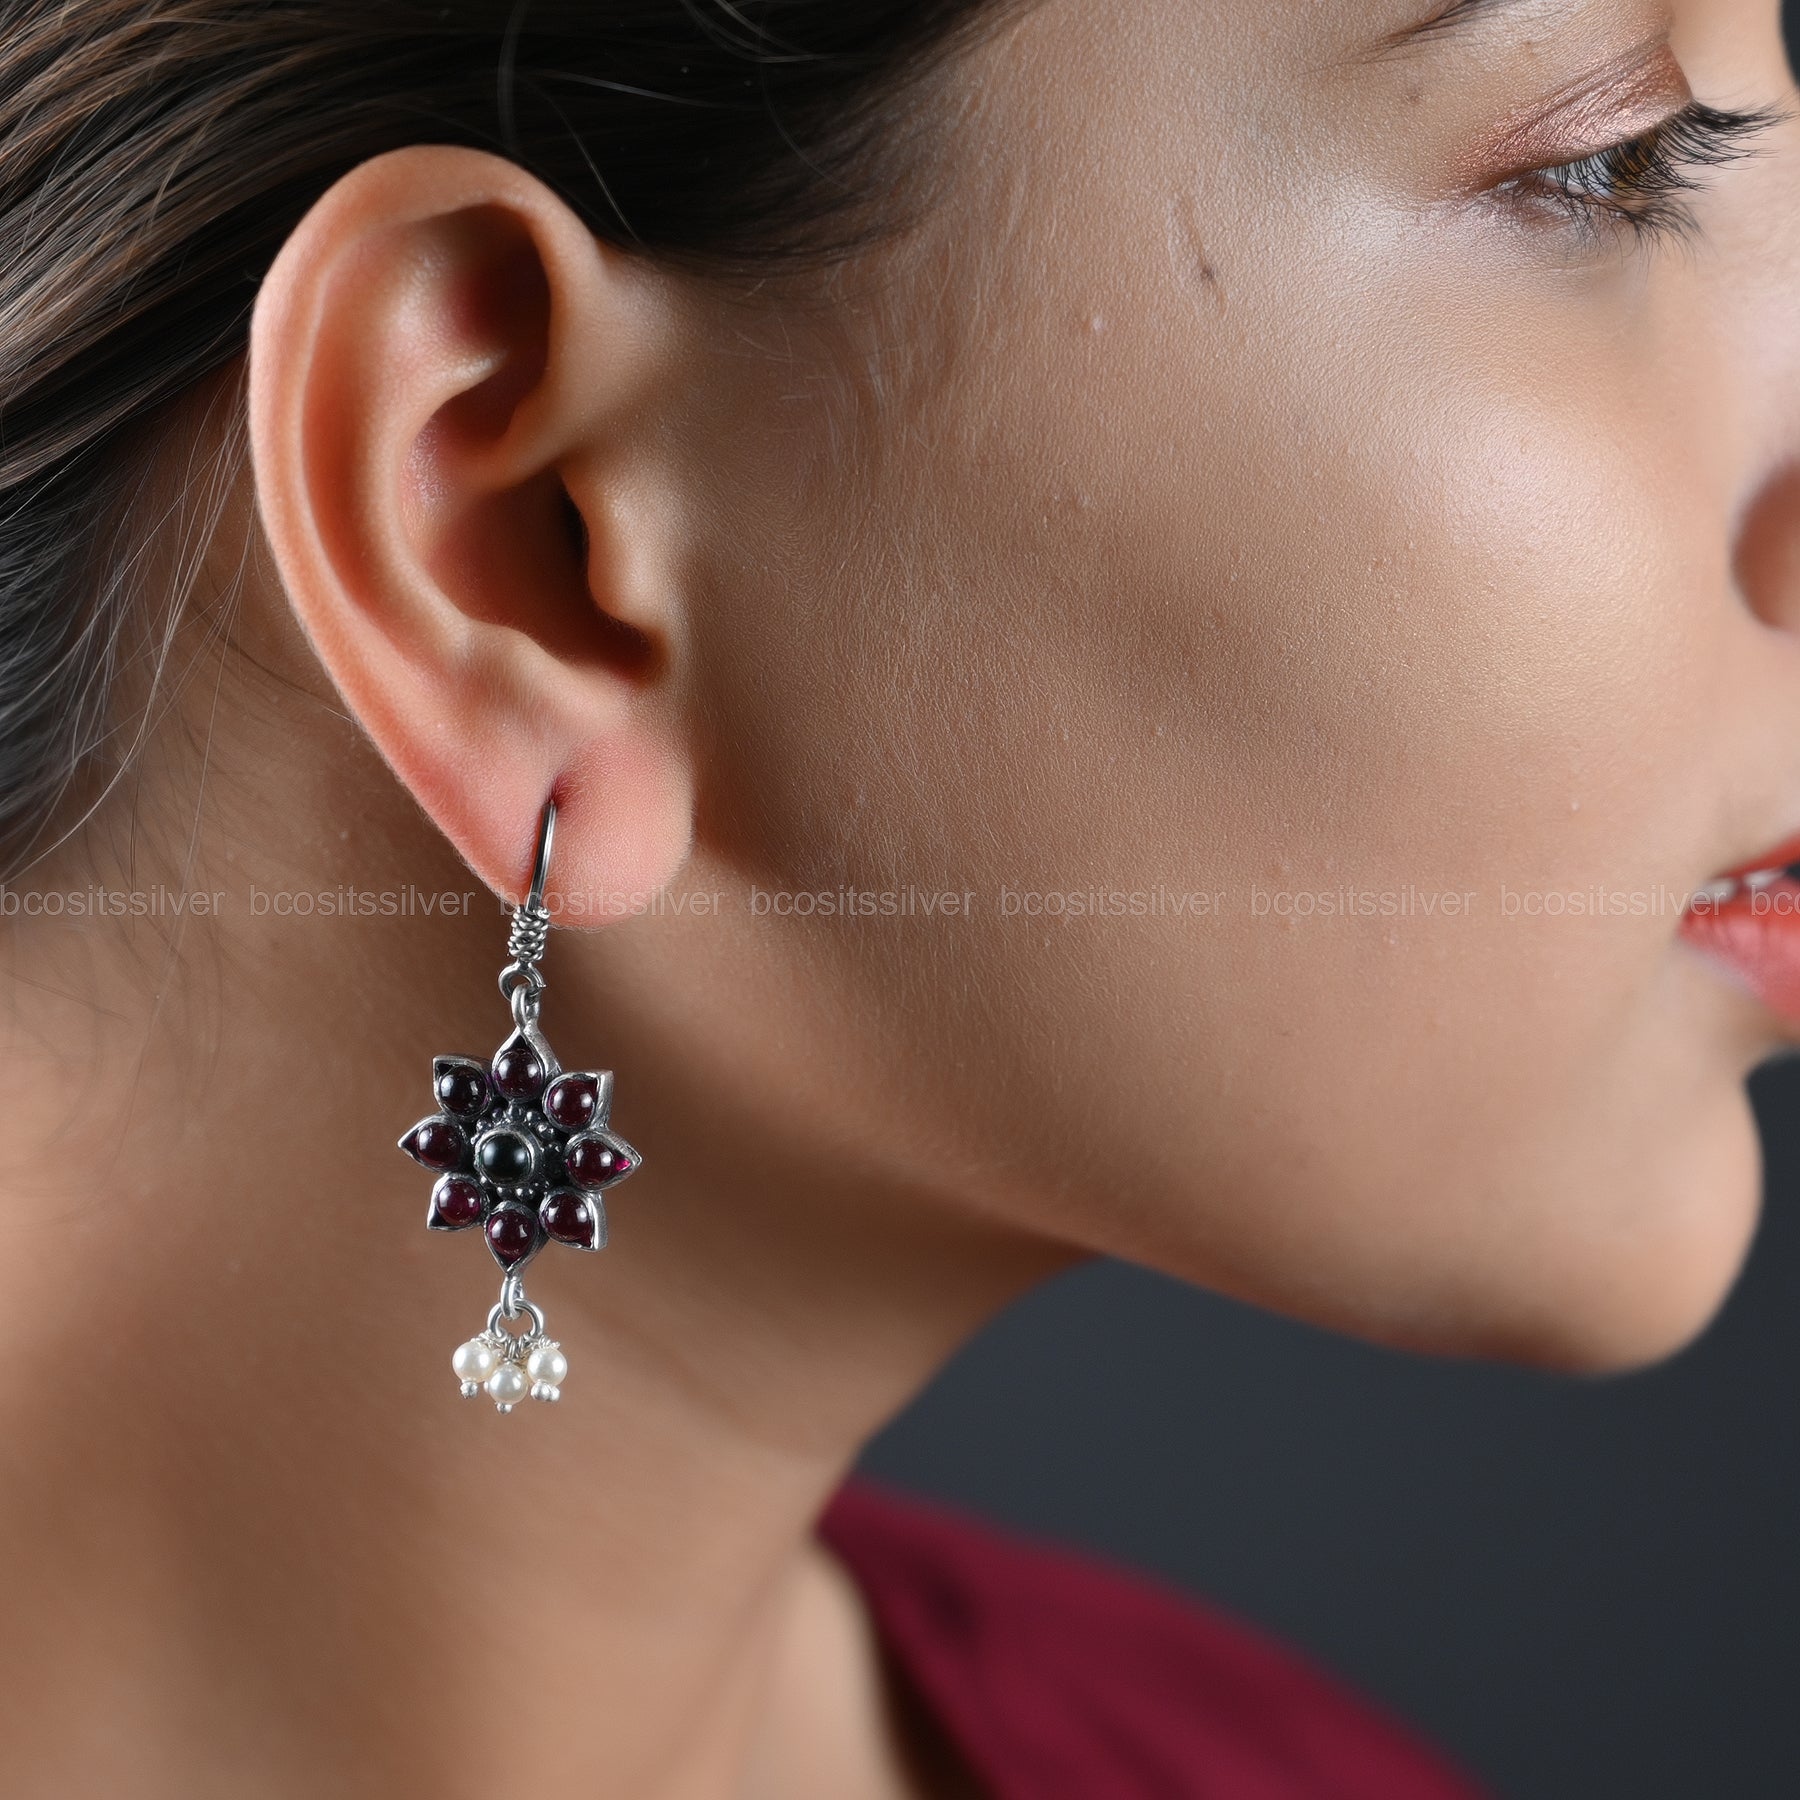 Oxidized Earring - 1109